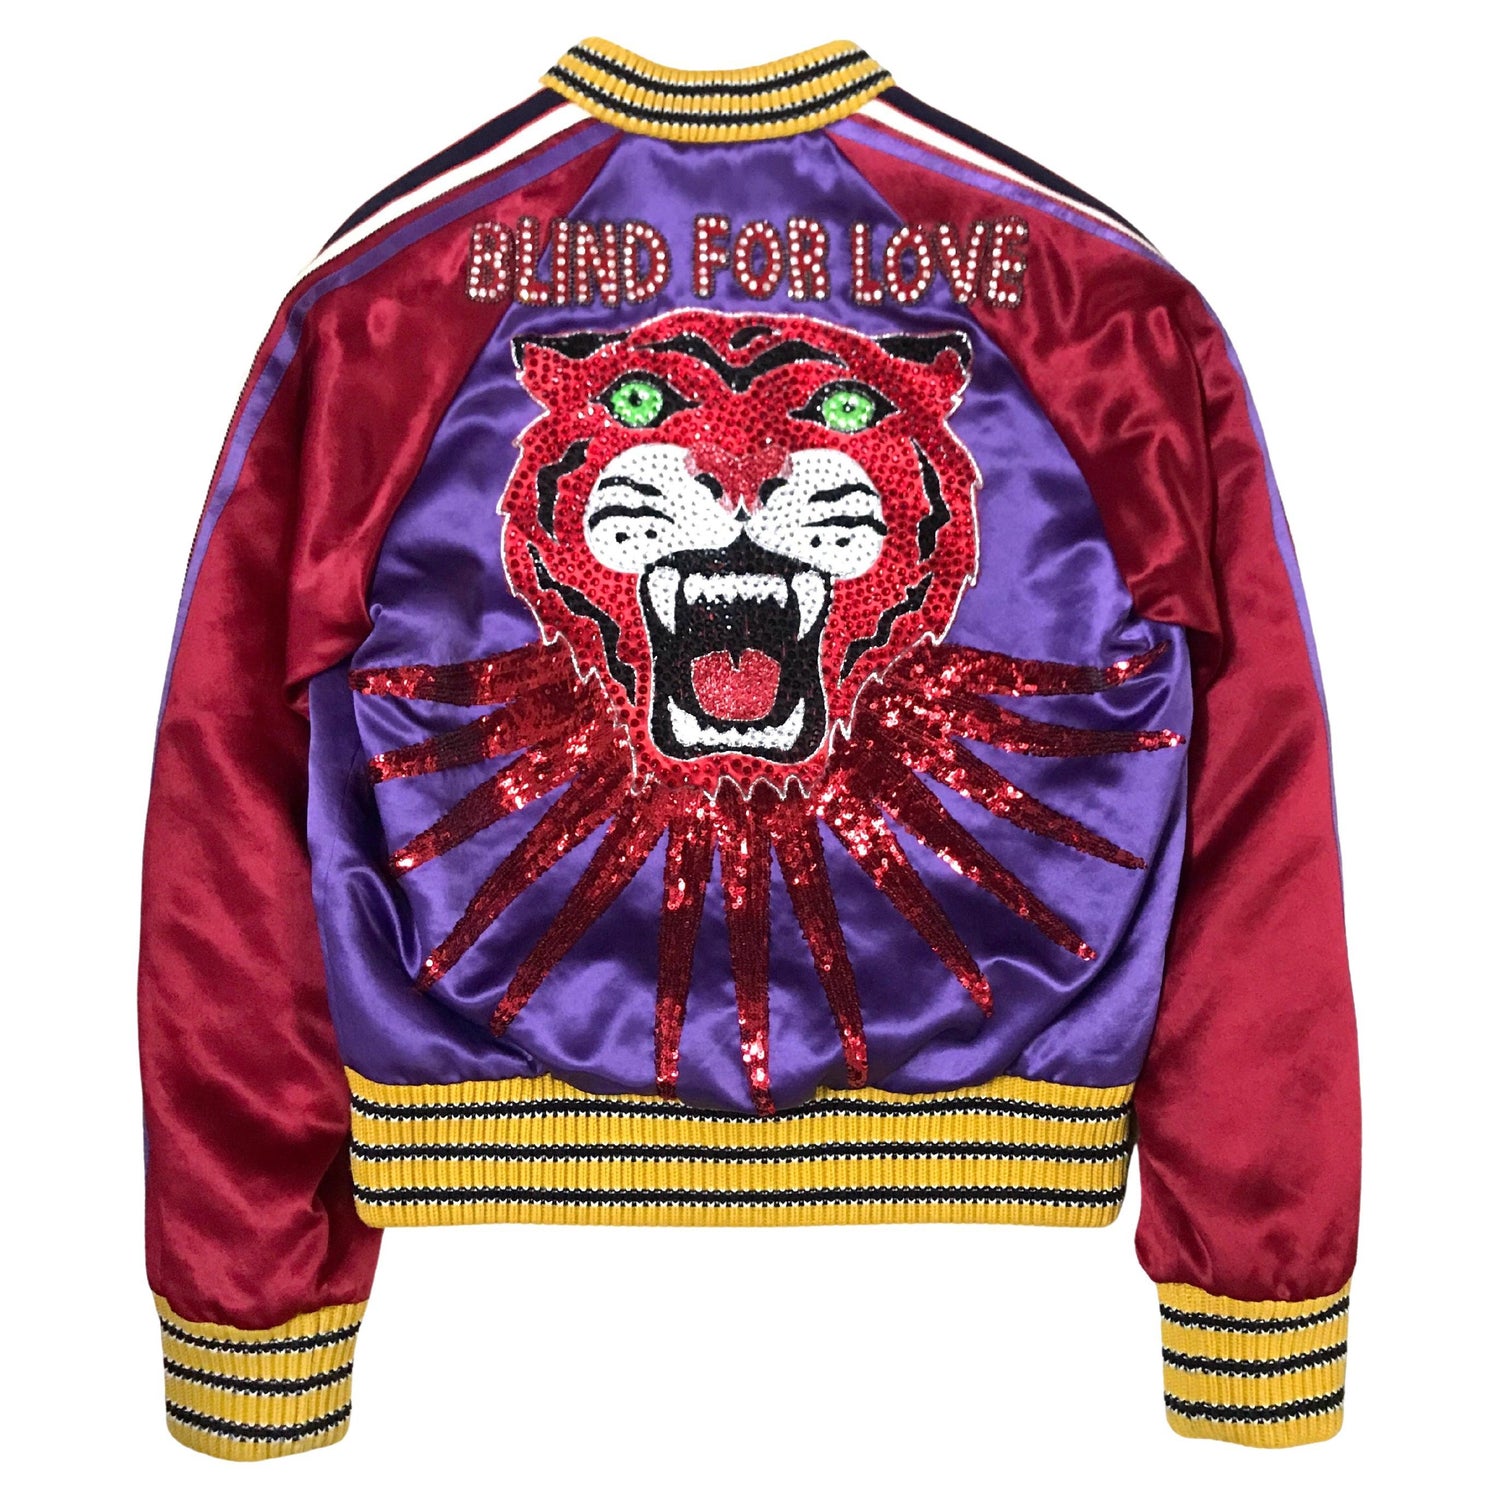 Gucci Tiger Jacket - 5 For Sale on 1stDibs | tiger jacket gucci, gucci  tiger jacket men's, gucci tiger bomber jacket